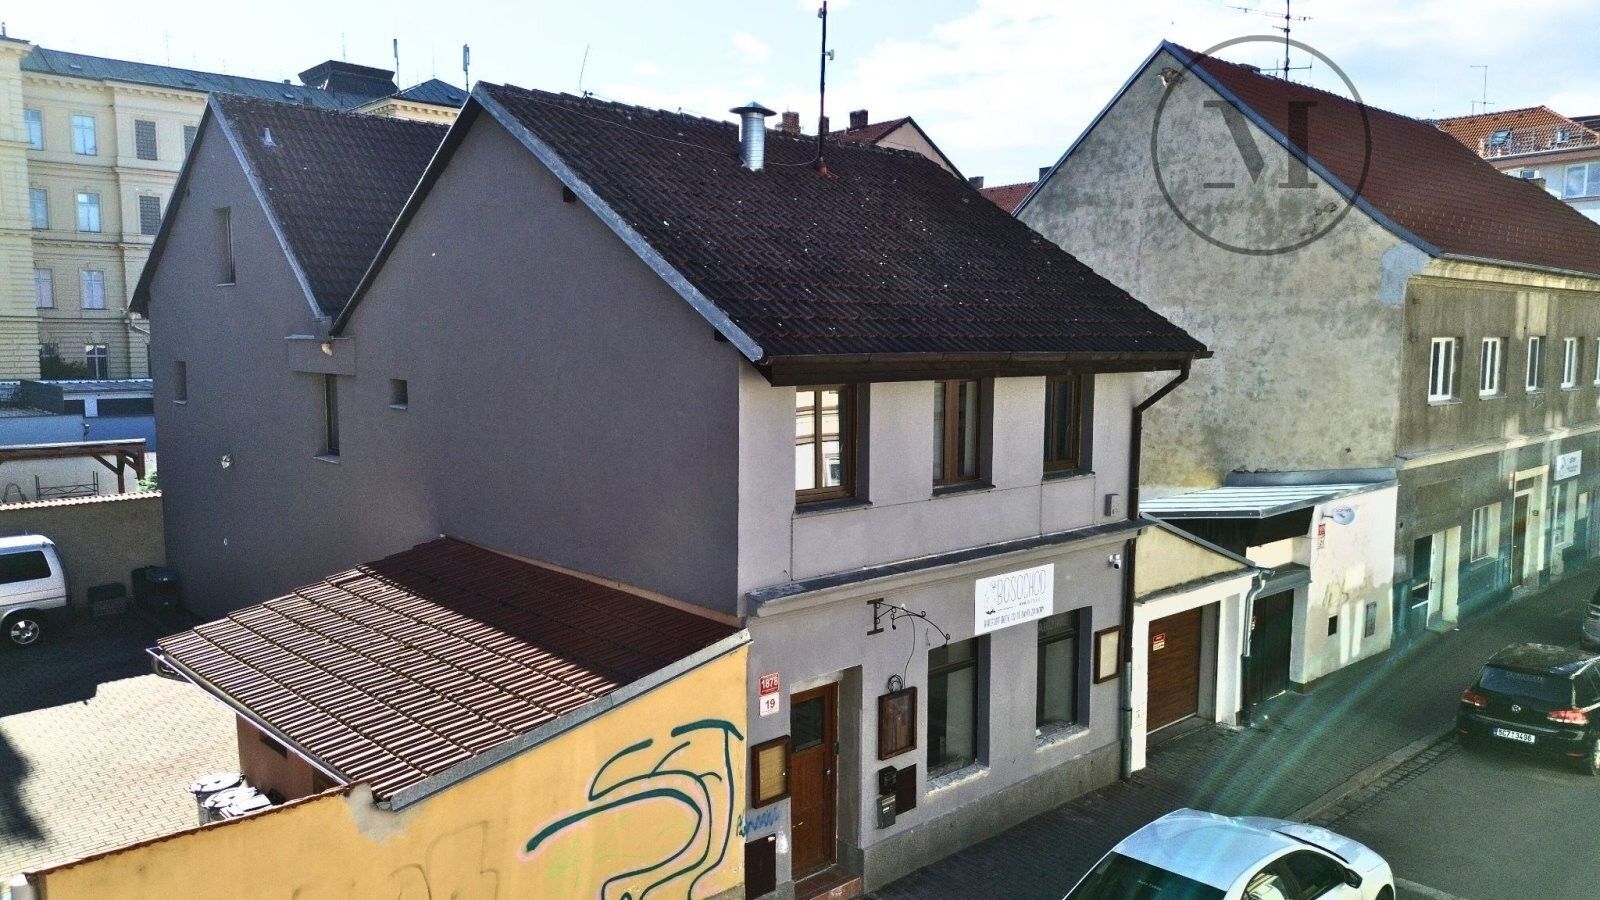 Ubytovací zařízení, Otakarova, České Budějovice, 249 m²